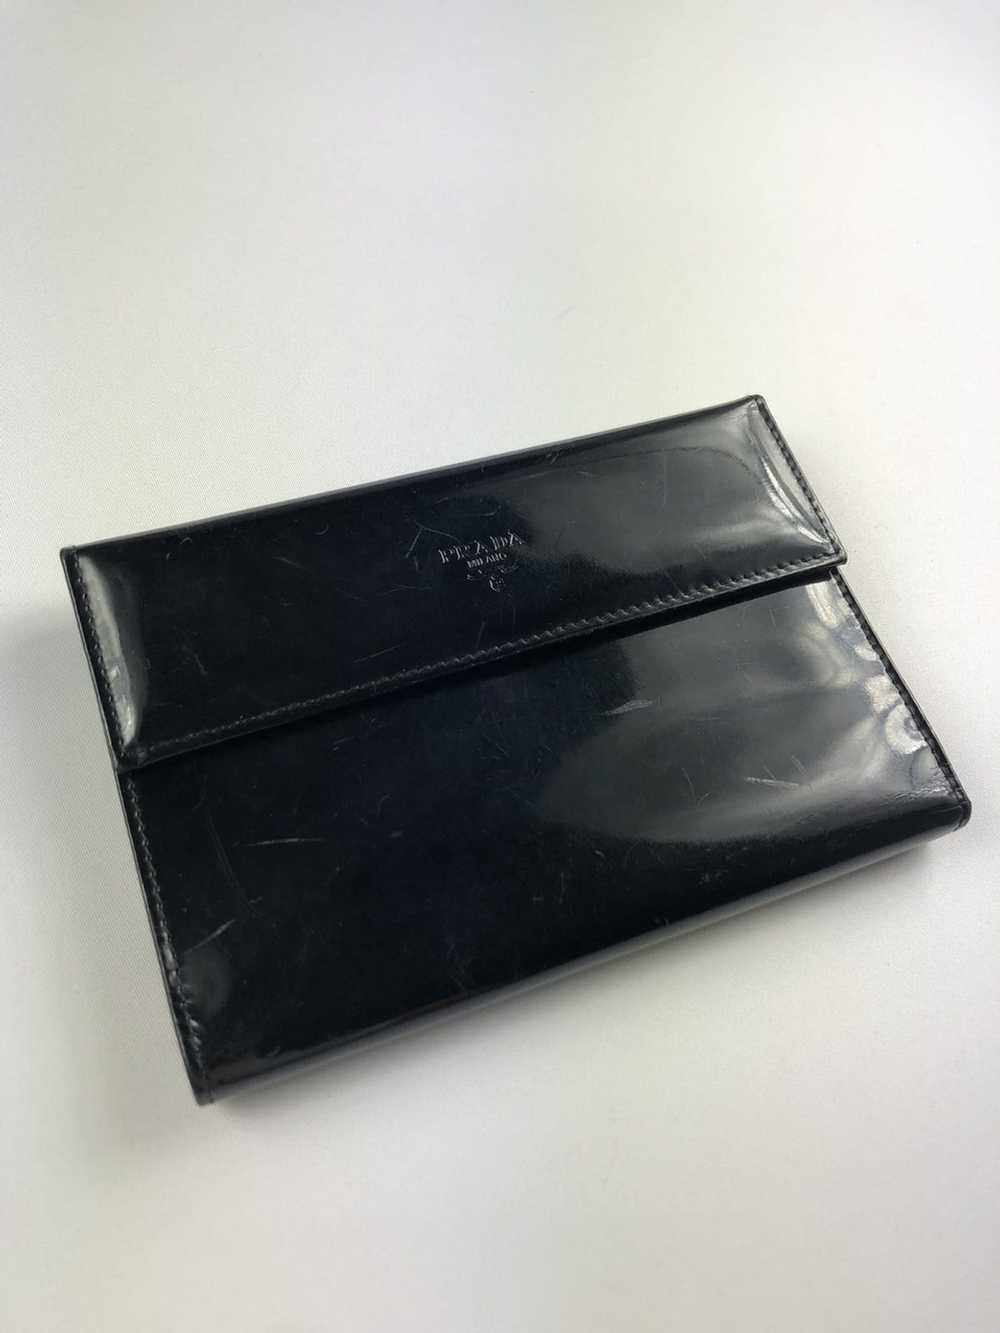 Prada Prada milano black leather trifold wallet - image 1